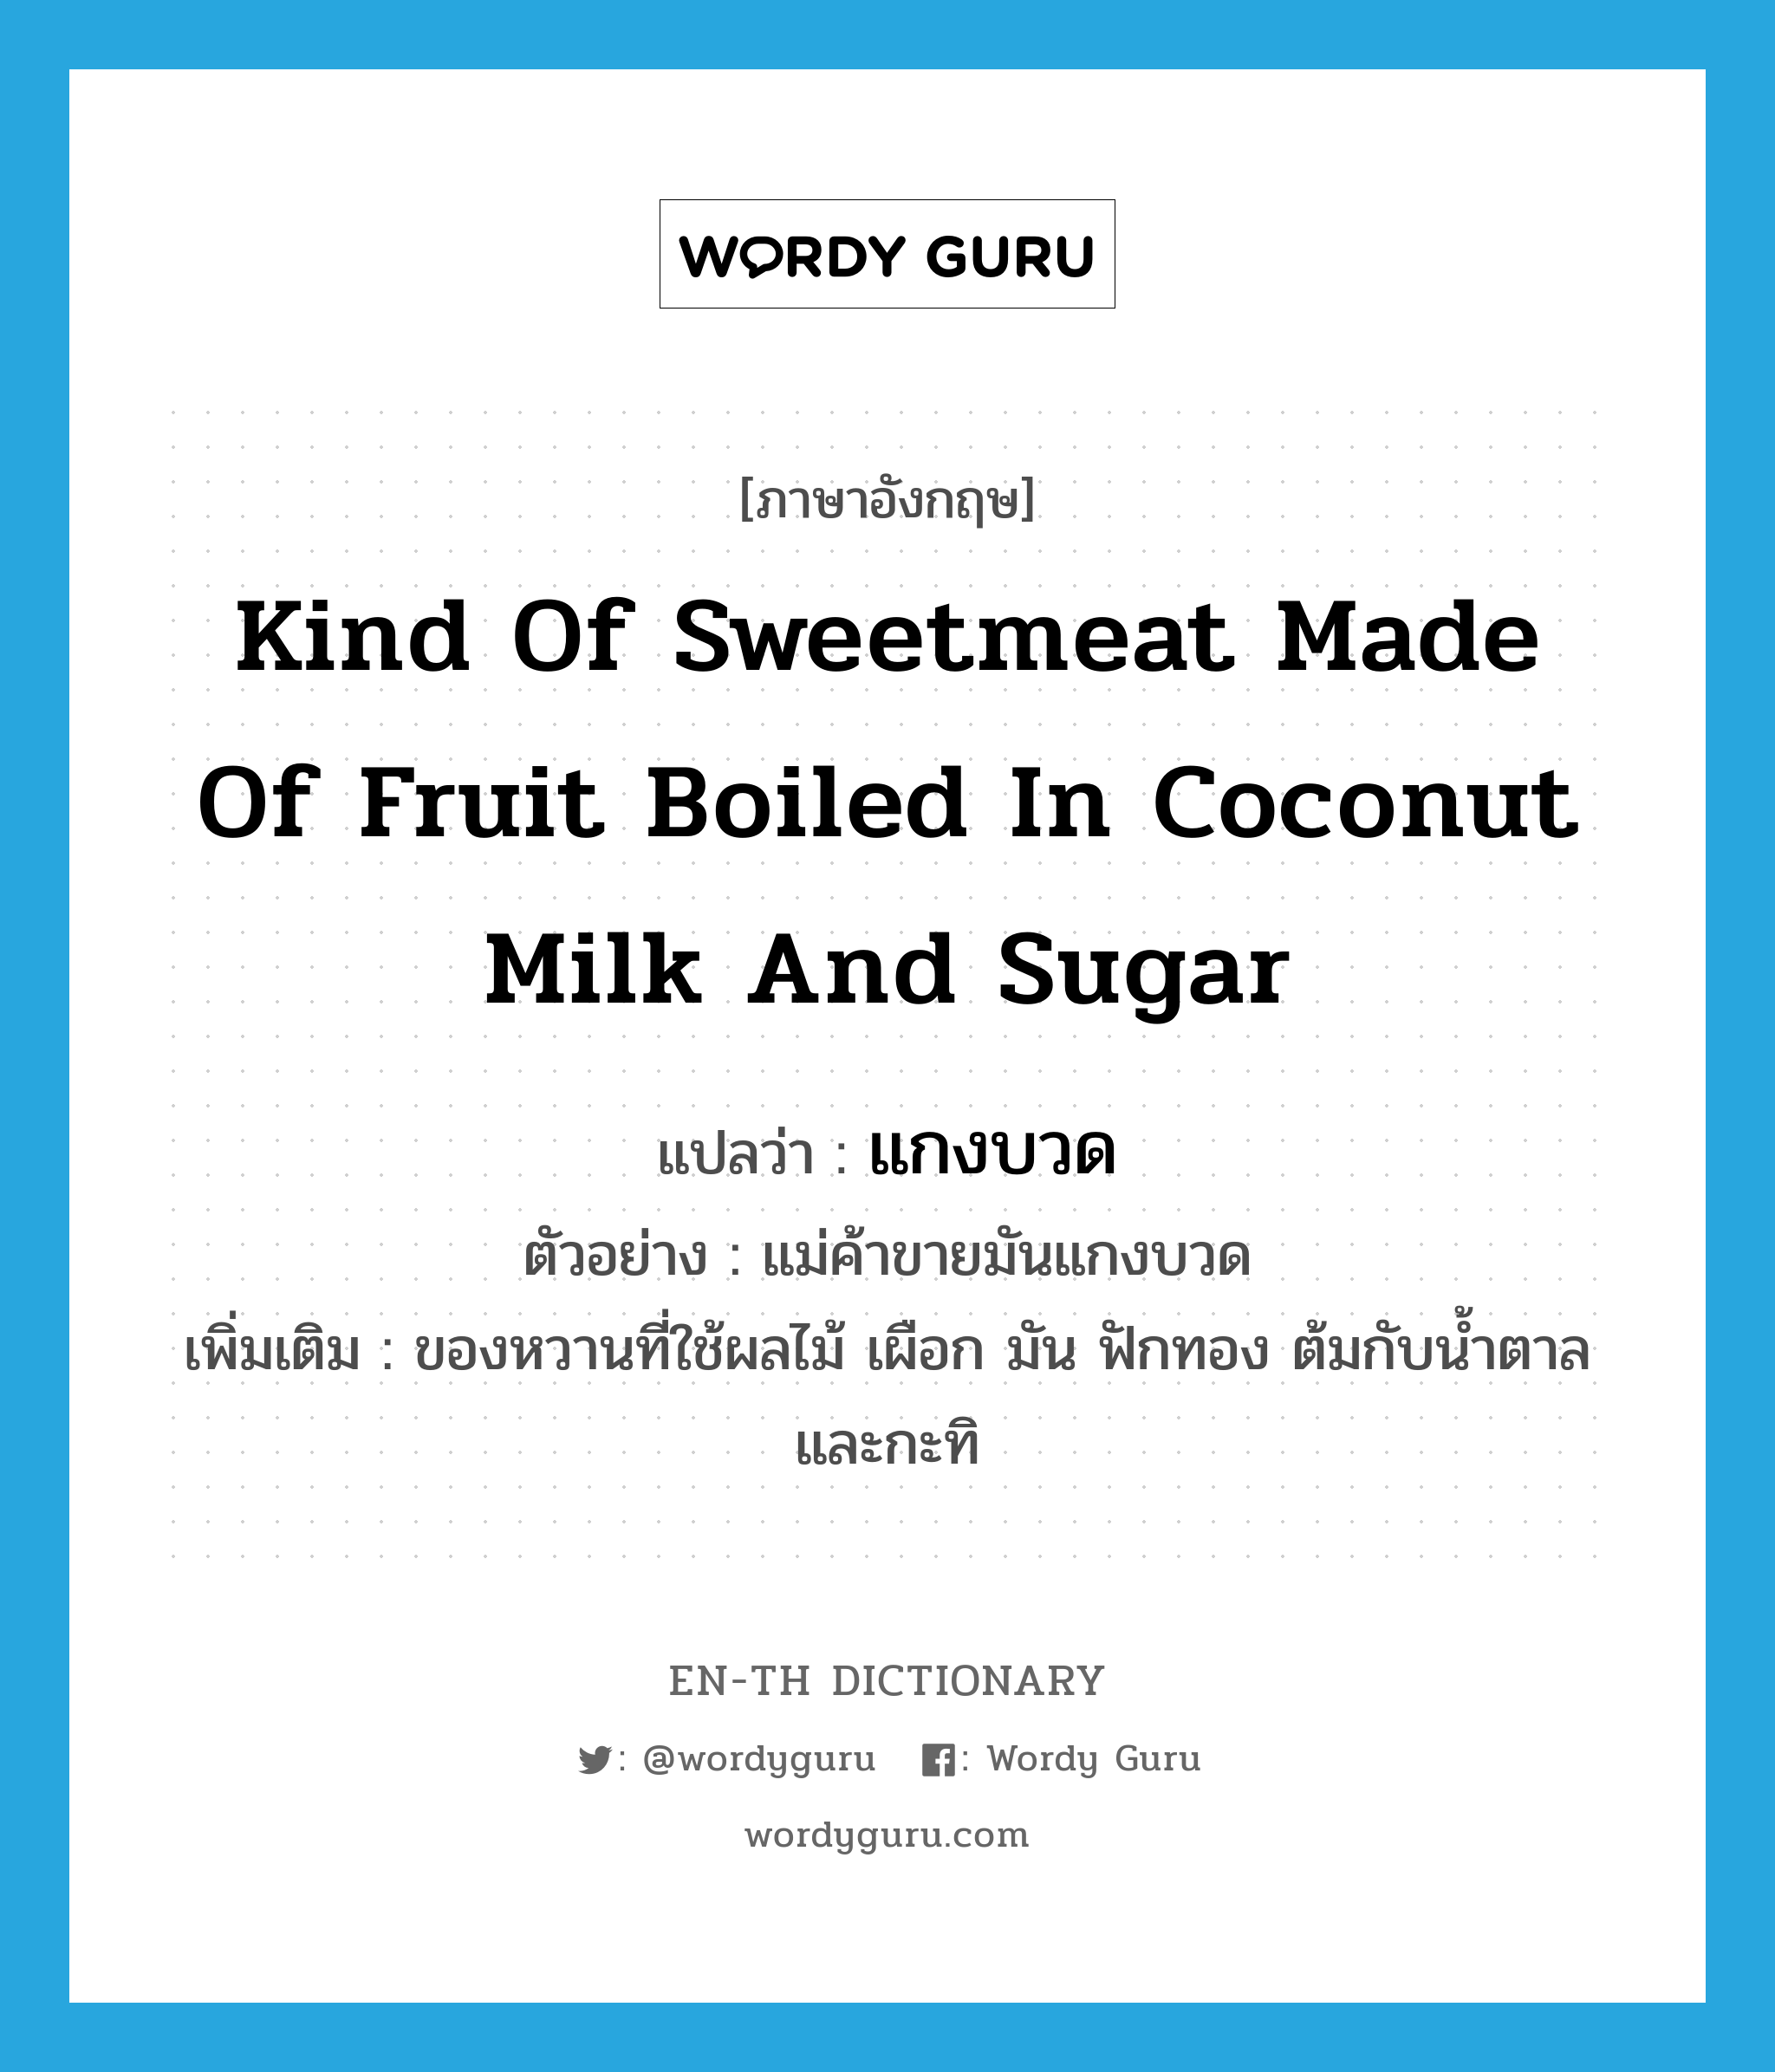 kind of sweetmeat made of fruit boiled in coconut milk and sugar แปลว่า?, คำศัพท์ภาษาอังกฤษ kind of sweetmeat made of fruit boiled in coconut milk and sugar แปลว่า แกงบวด ประเภท N ตัวอย่าง แม่ค้าขายมันแกงบวด เพิ่มเติม ของหวานที่ใช้ผลไม้ เผือก มัน ฟักทอง ต้มกับน้ำตาล และกะทิ หมวด N